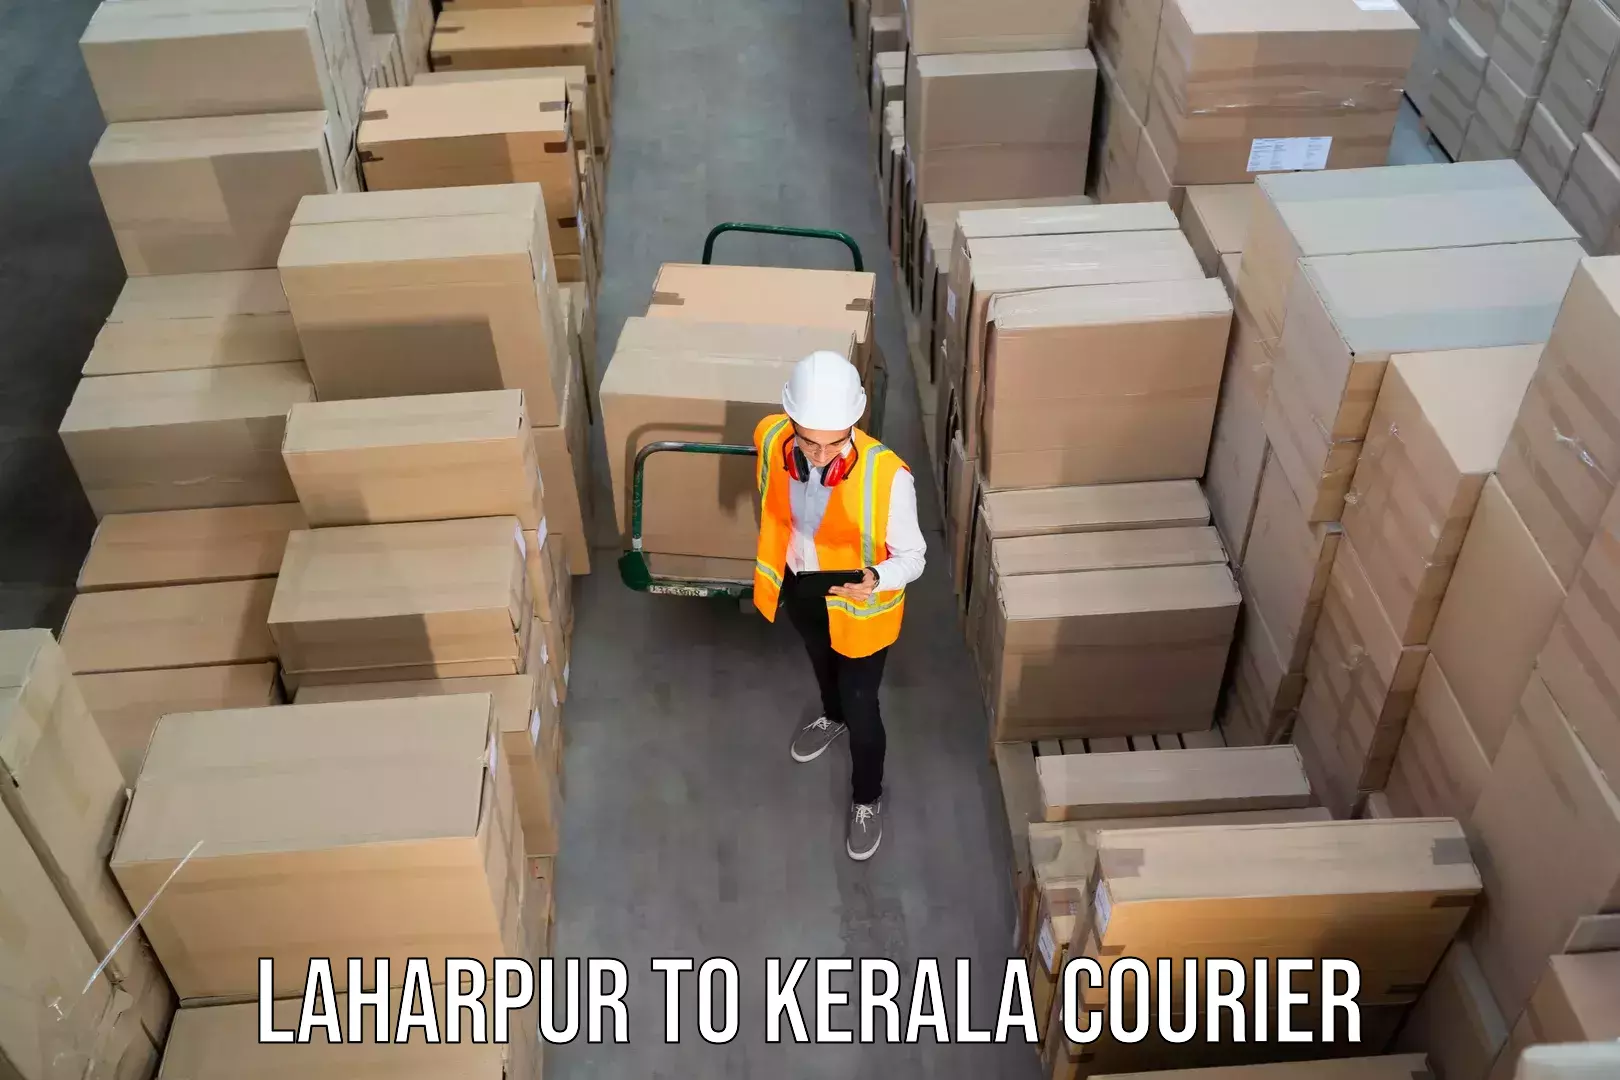 Enhanced tracking features Laharpur to Kerala